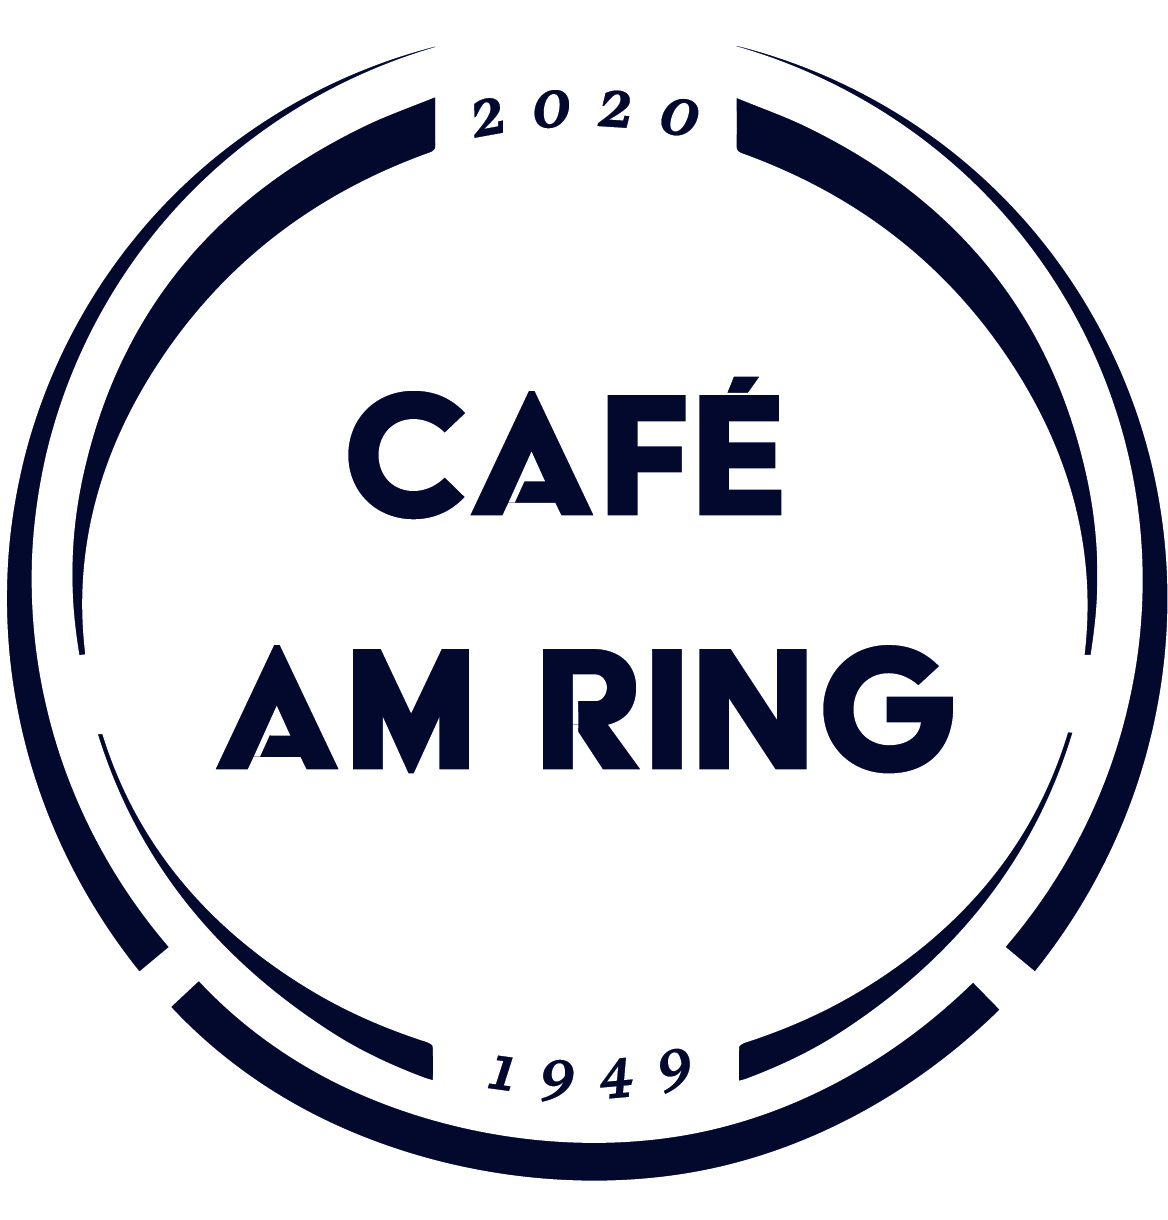 (c) Cafe-am-ring.de